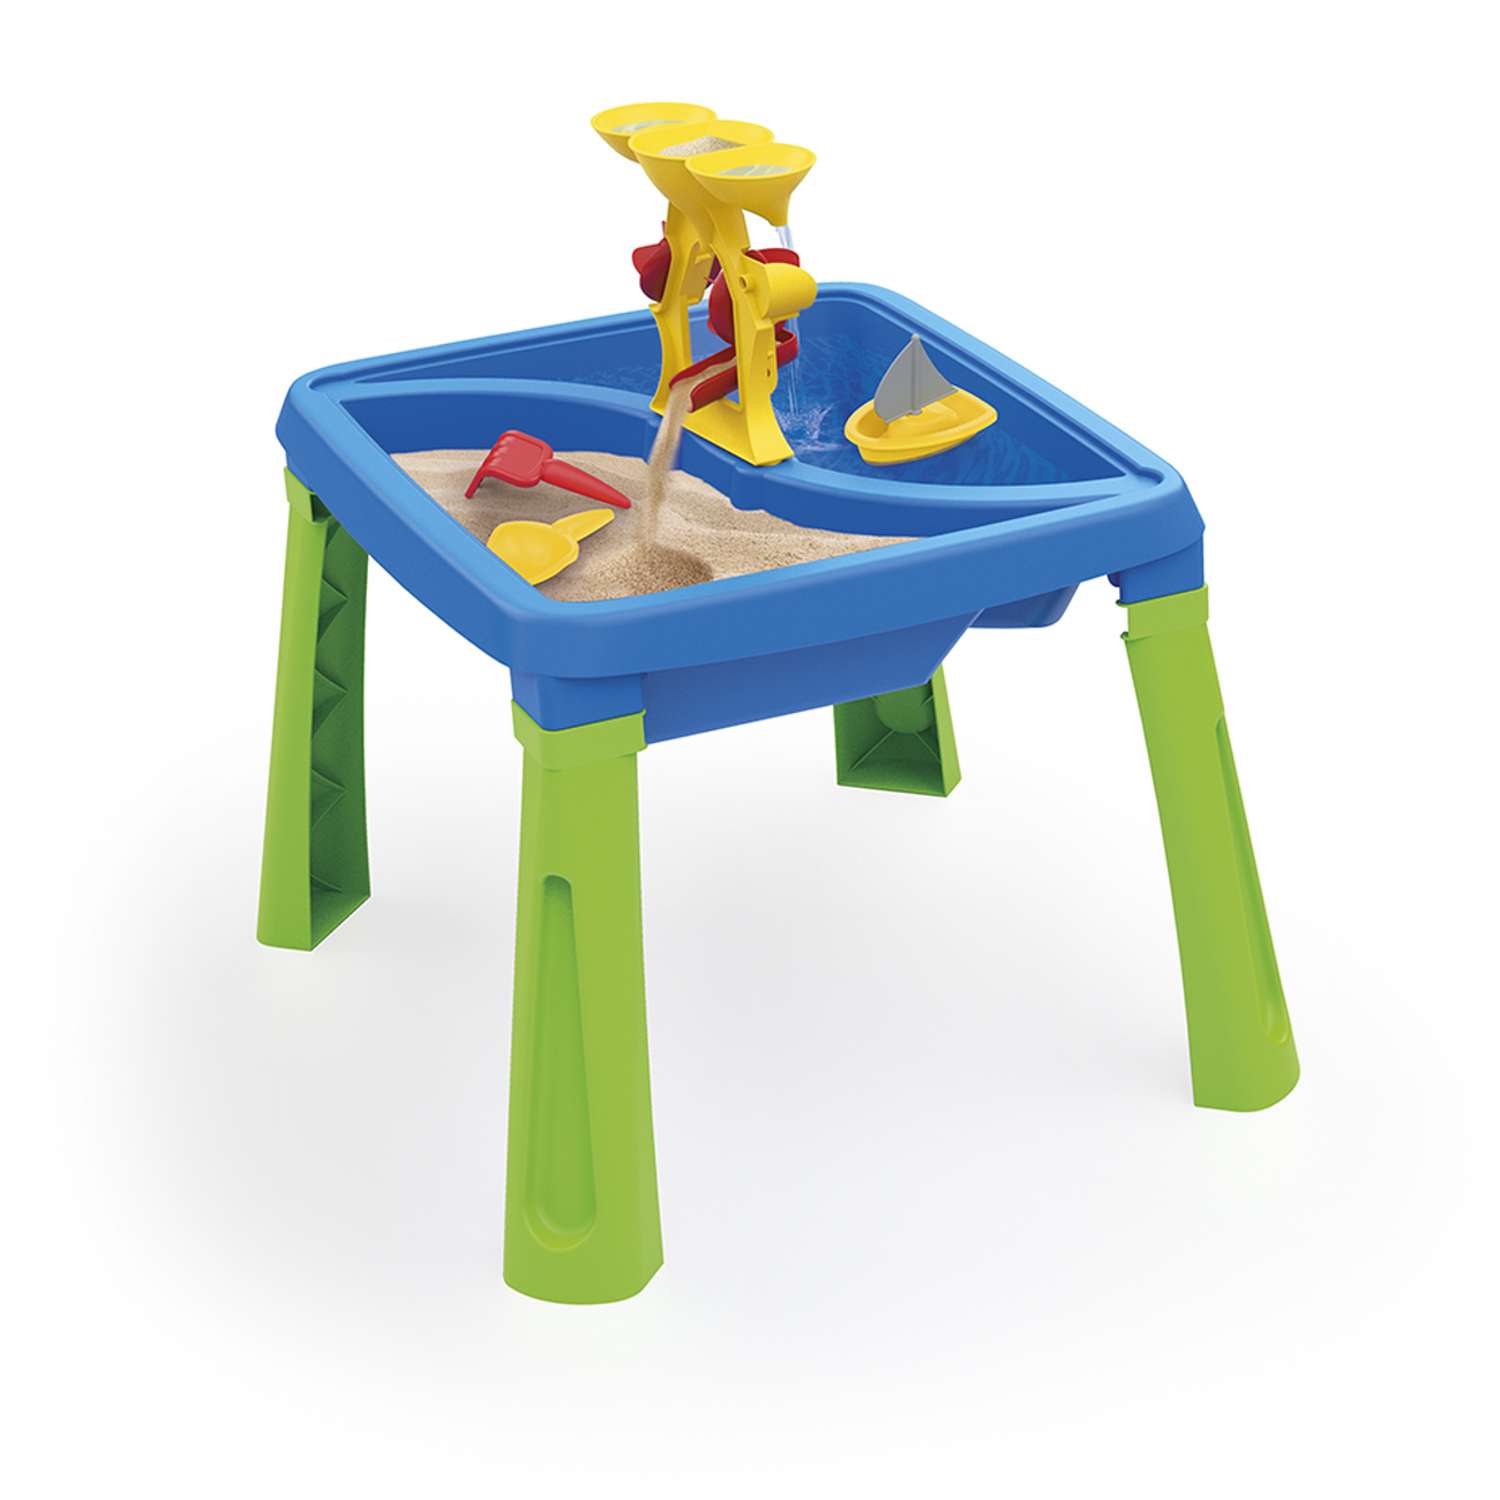 Песочница игровая Dolu 3в1 color песок-вода-столик с аксессуарами - фото 1